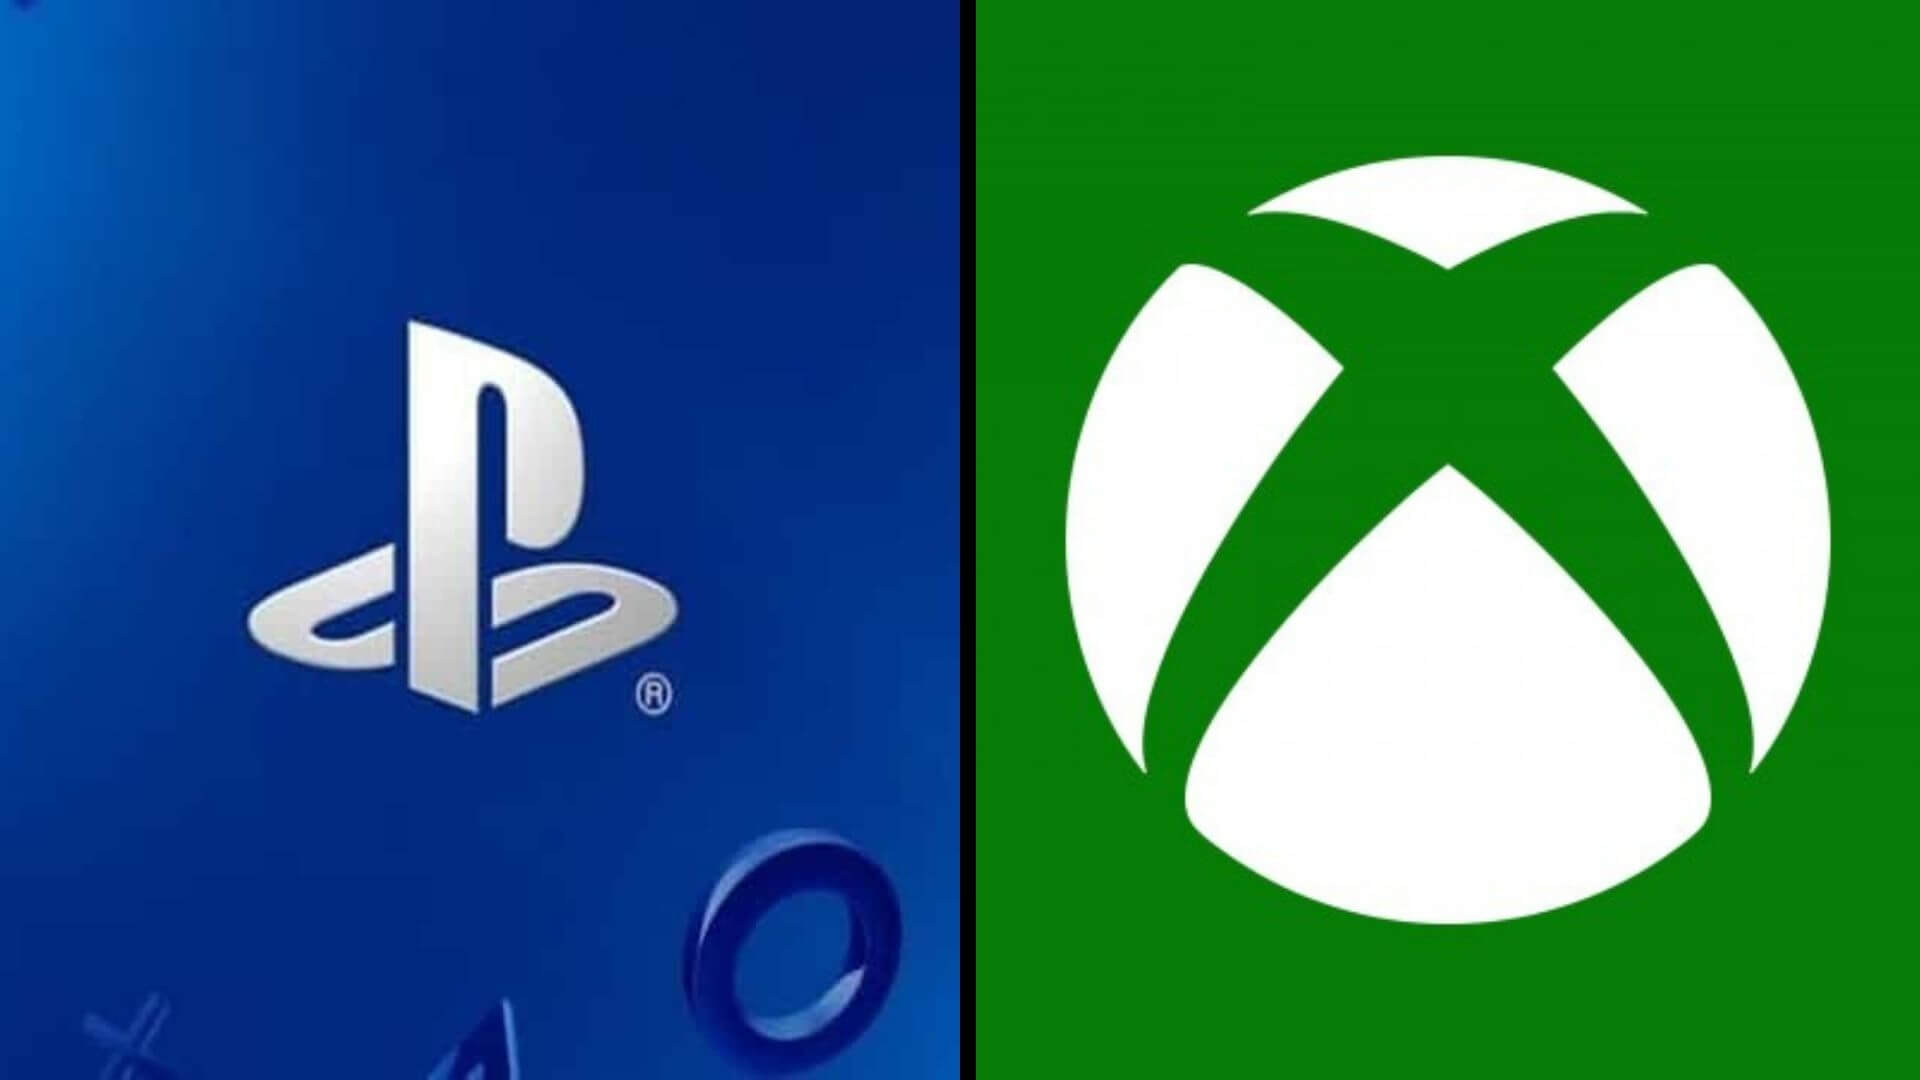 PlayStation cuadruplica las ventas de Xbox en Europa, asegura la Comisión Europea